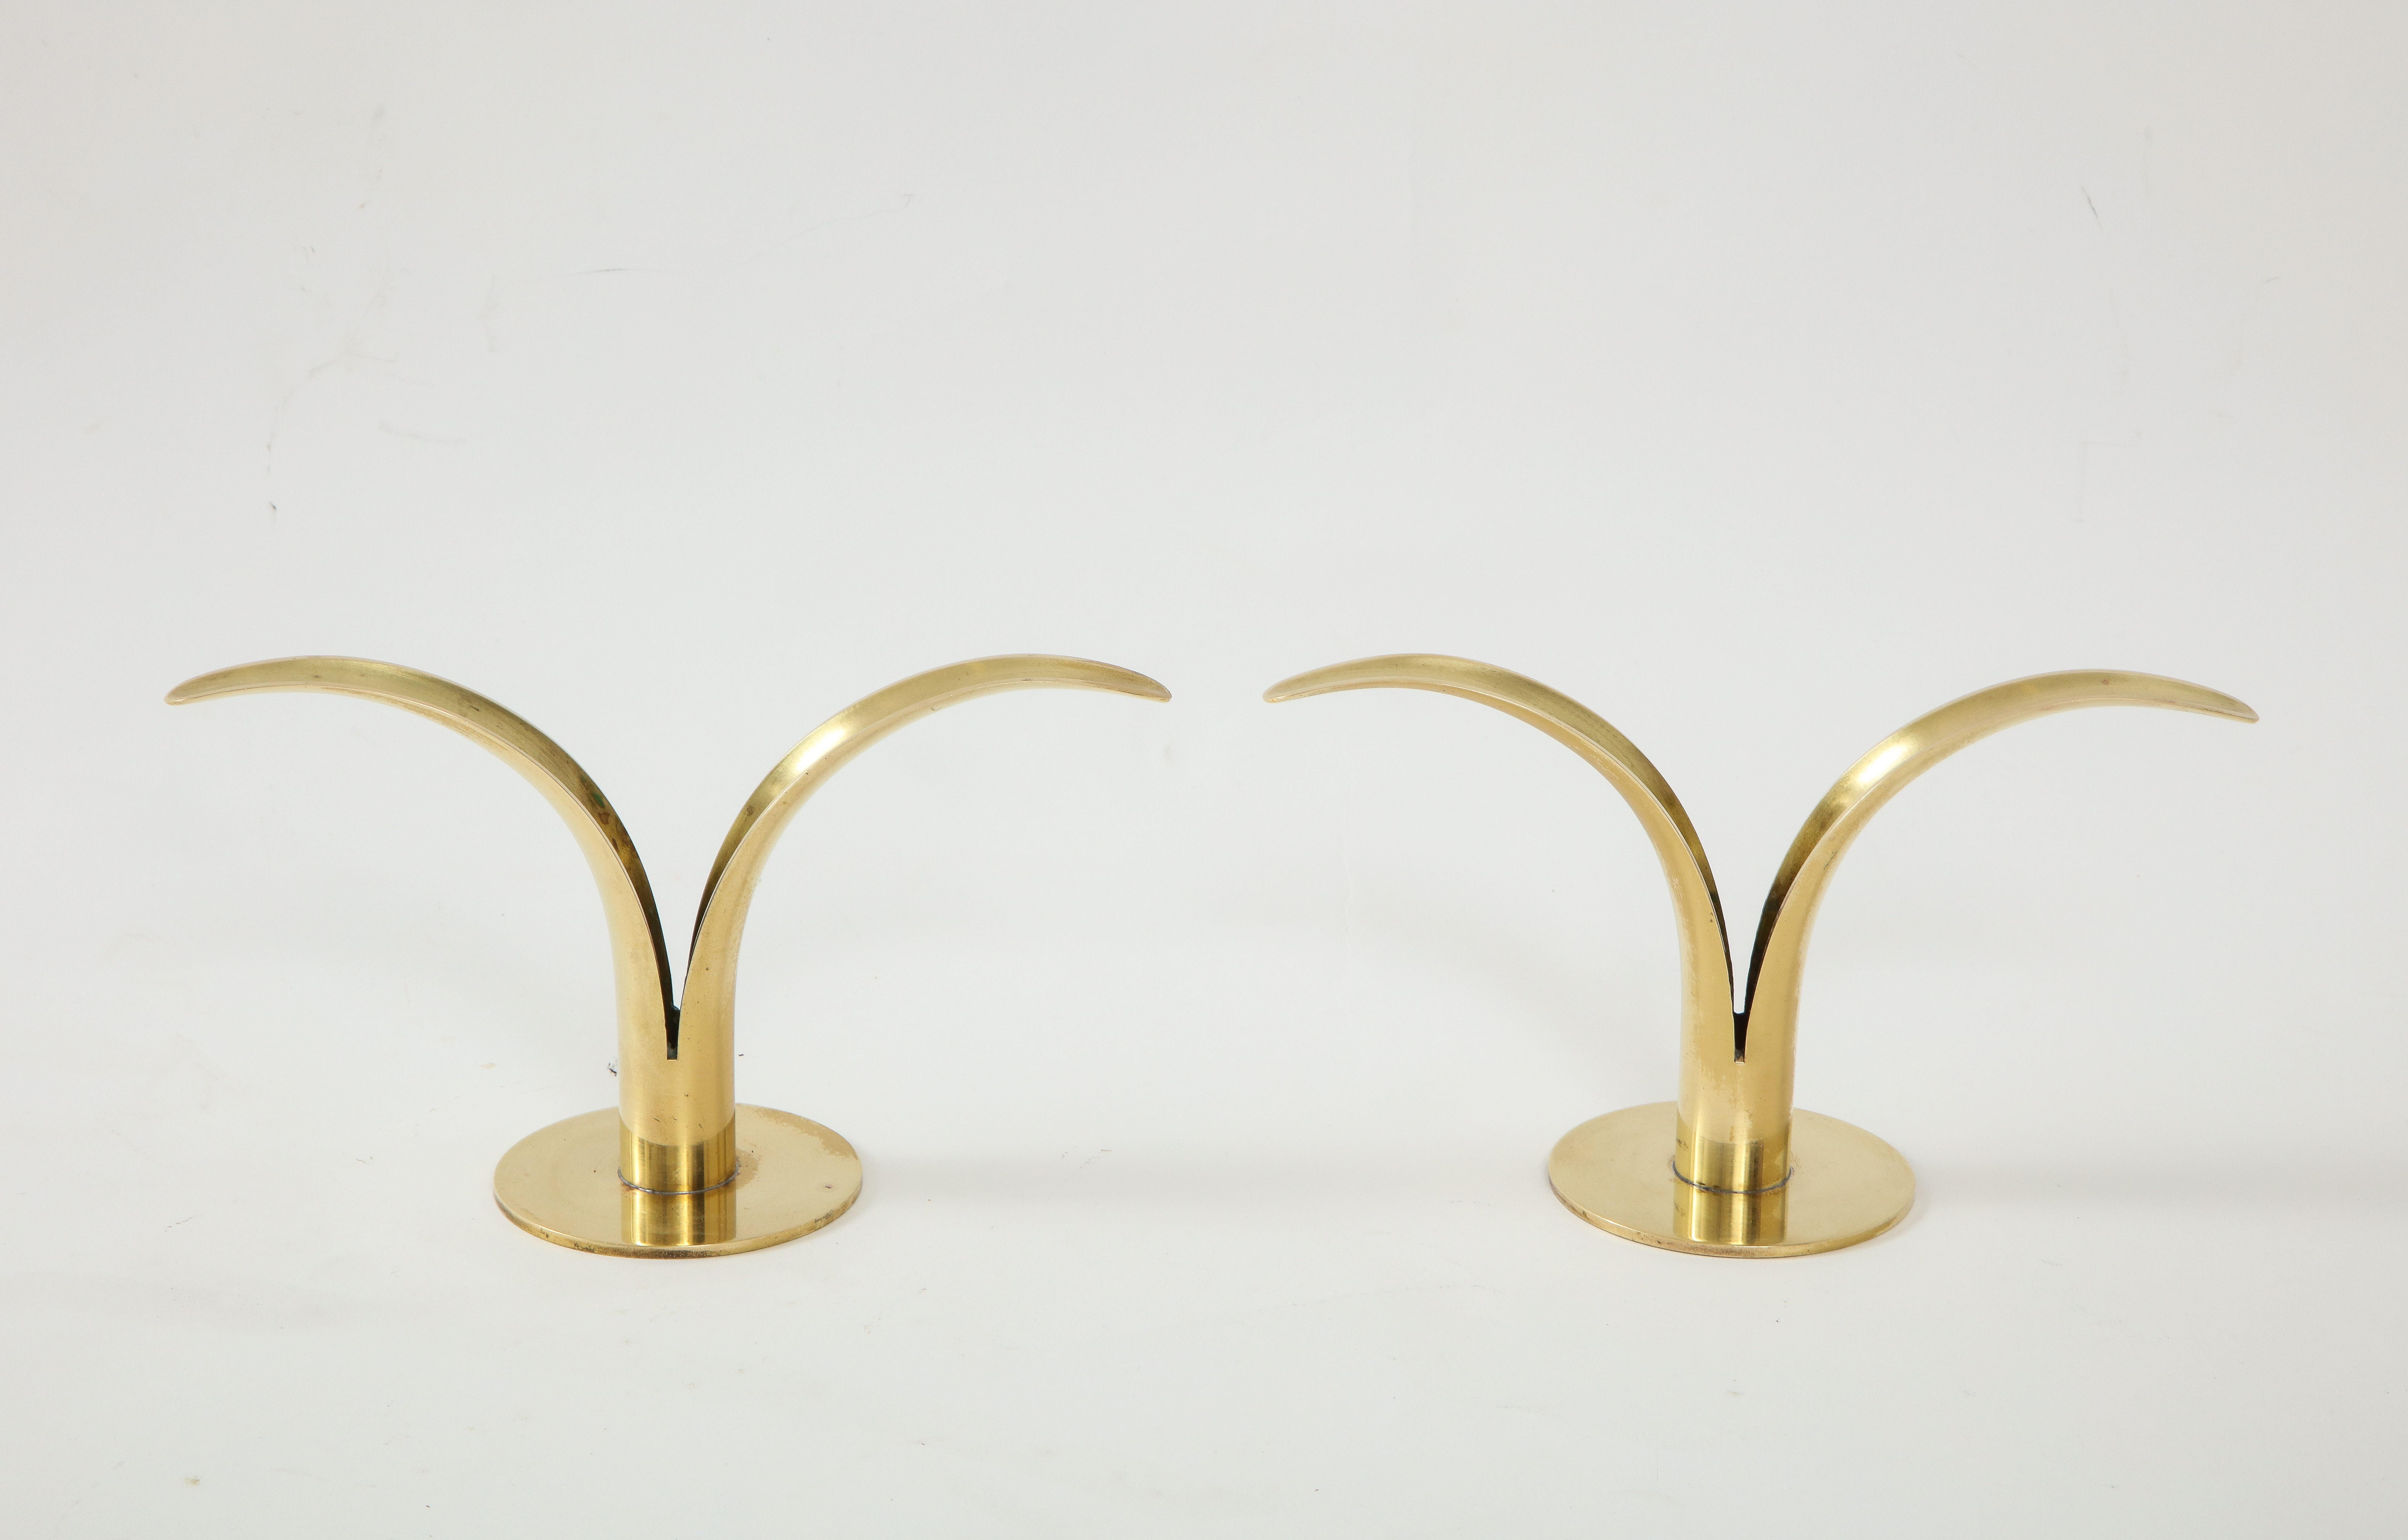 Paire de chandeliers modernes suédois en laiton conçus par Ivar Ahlenius Bjork pour Ystad. Estampillé.